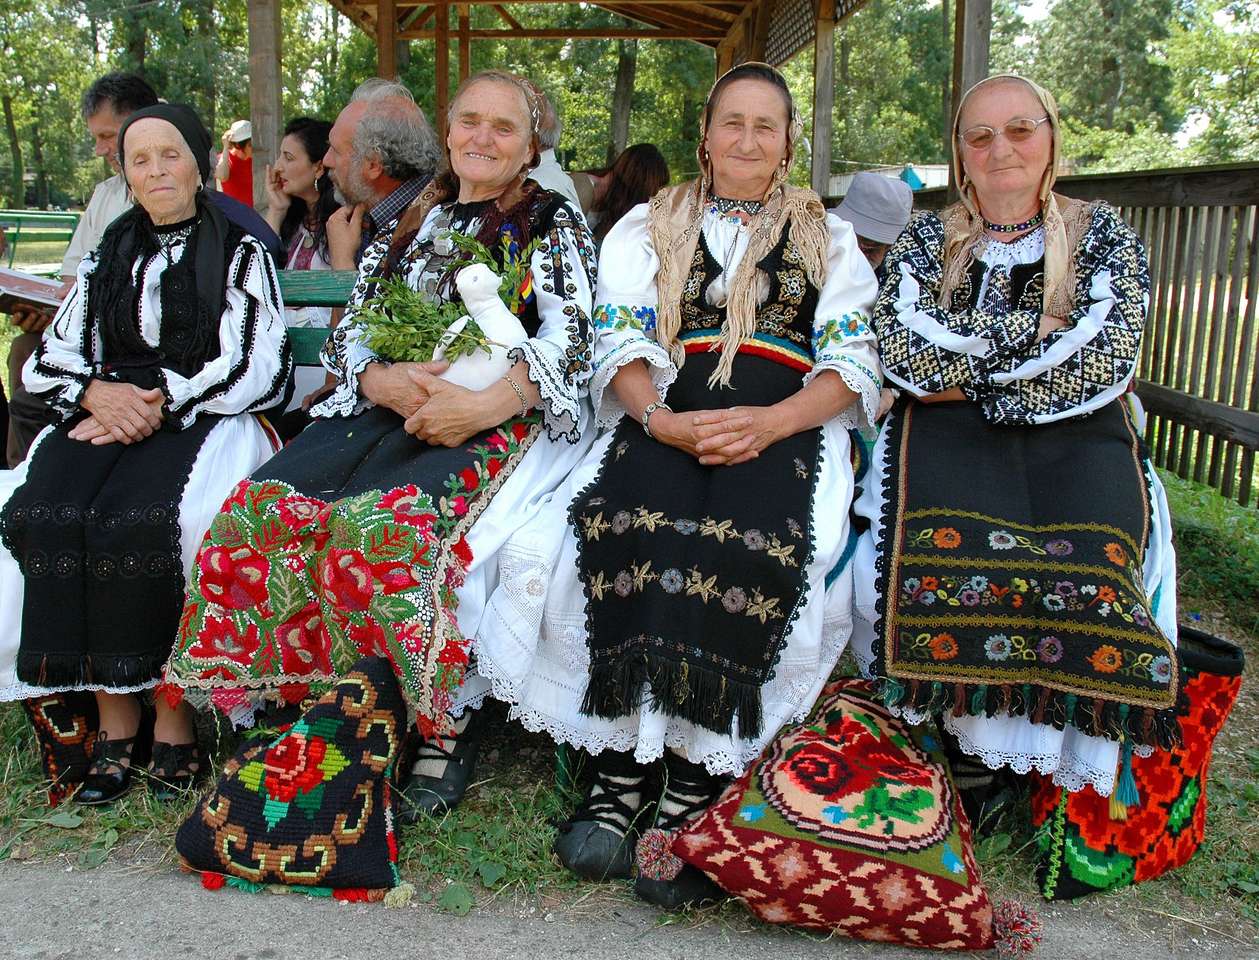 Romanian women in folk costume jigsaw puzzle online